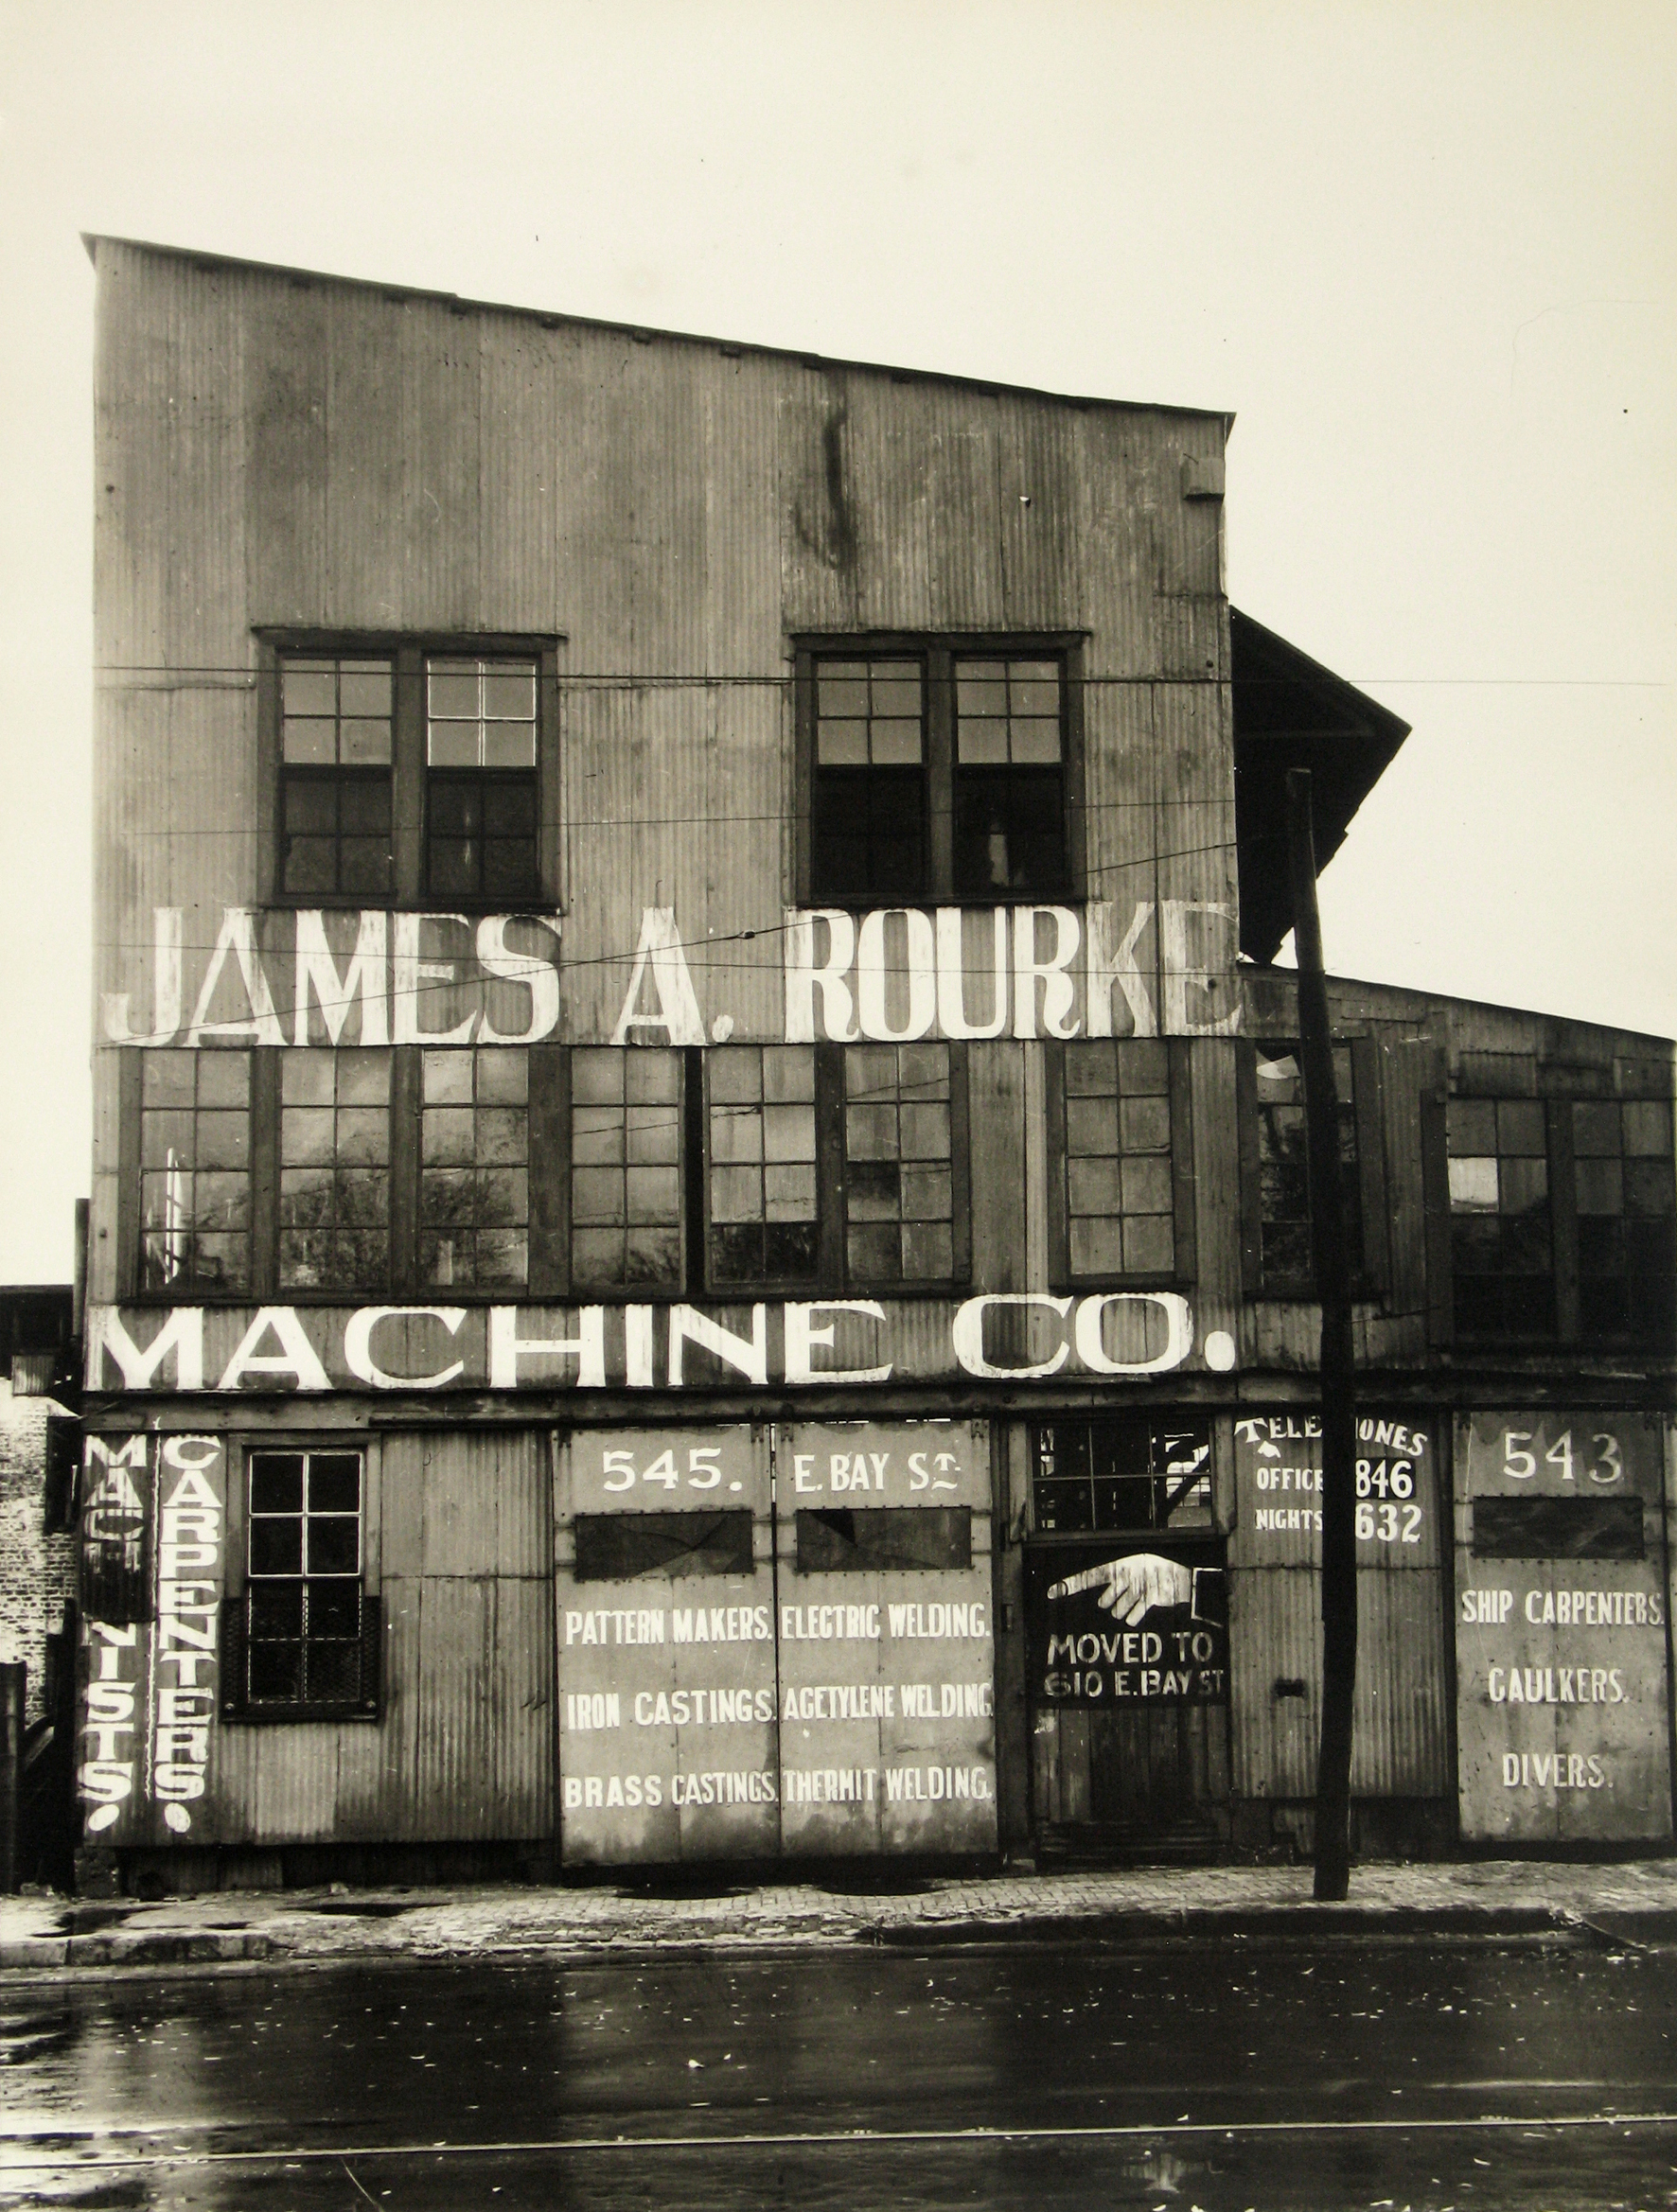 James A. Rourke Machine Co., Savannah, Georgia, 1936